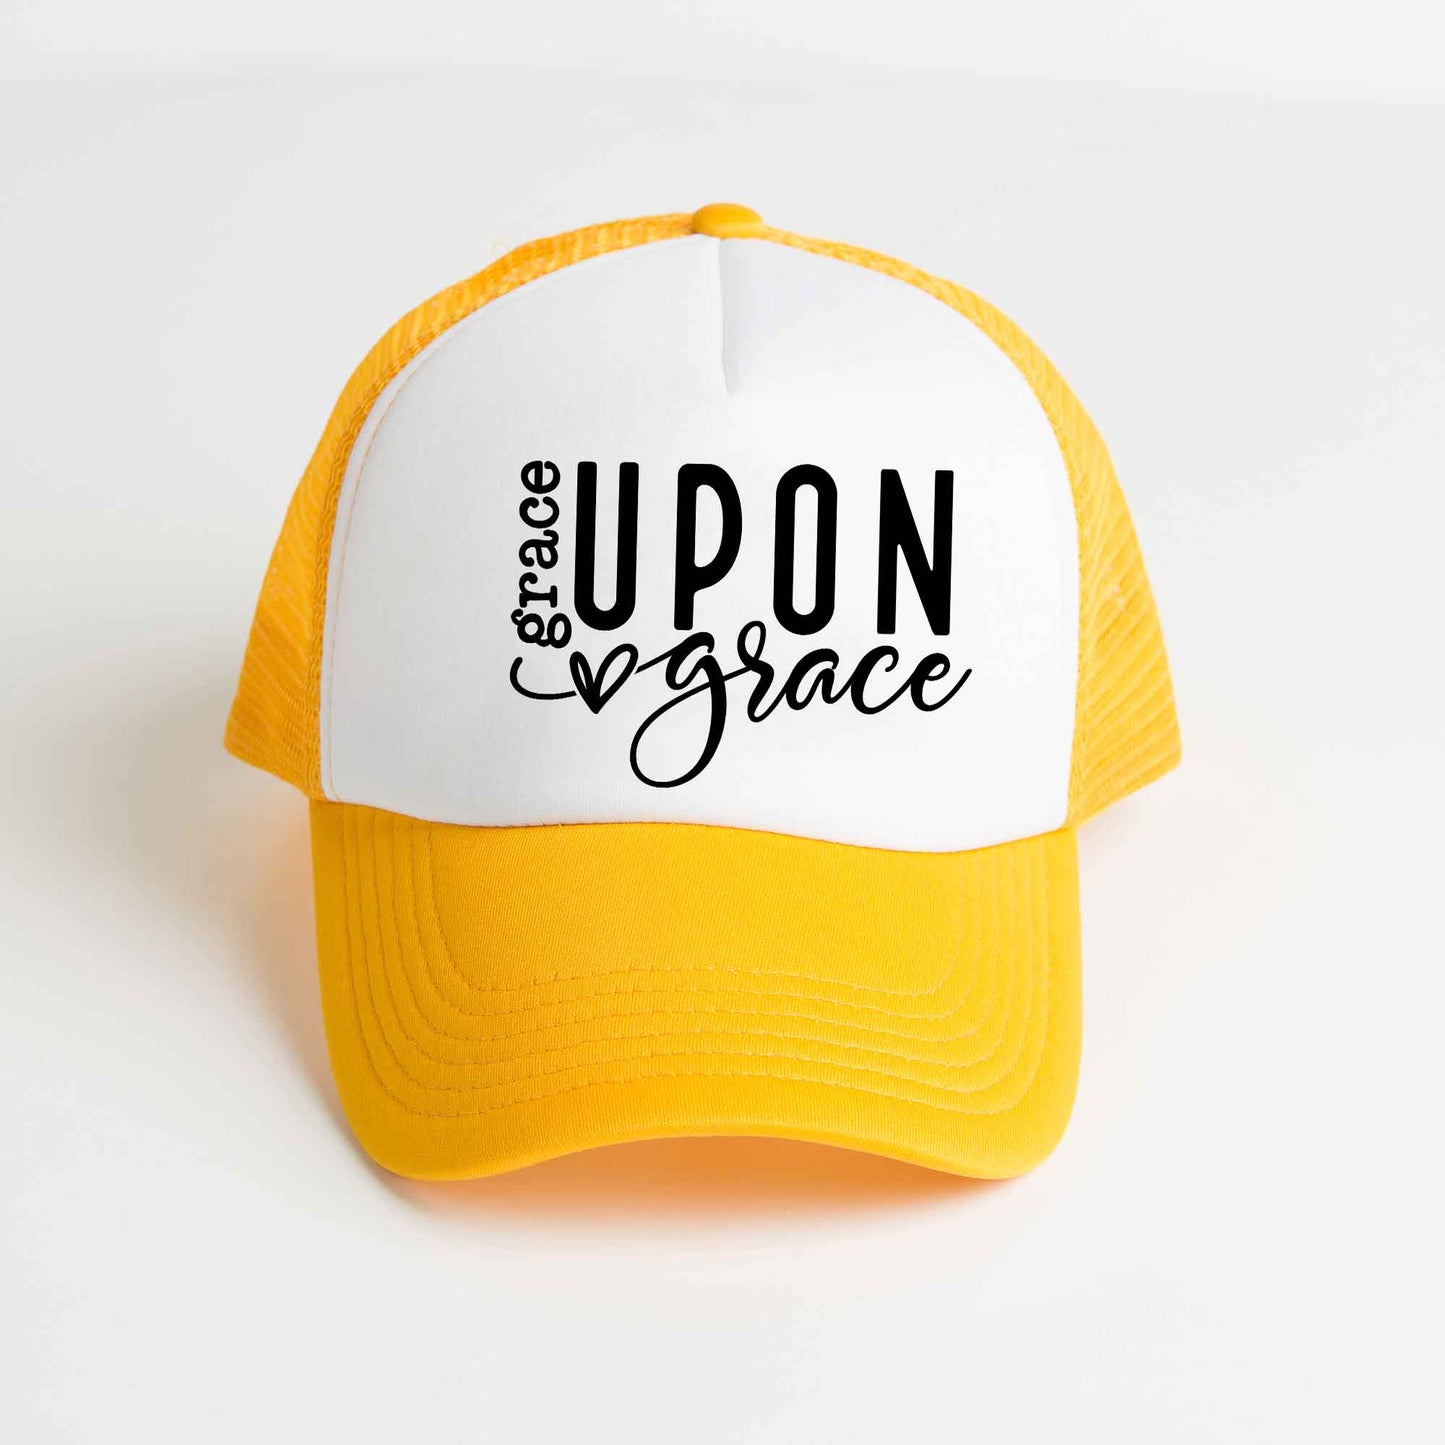 Grace Upon Grace Heart | Foam Trucker Hat